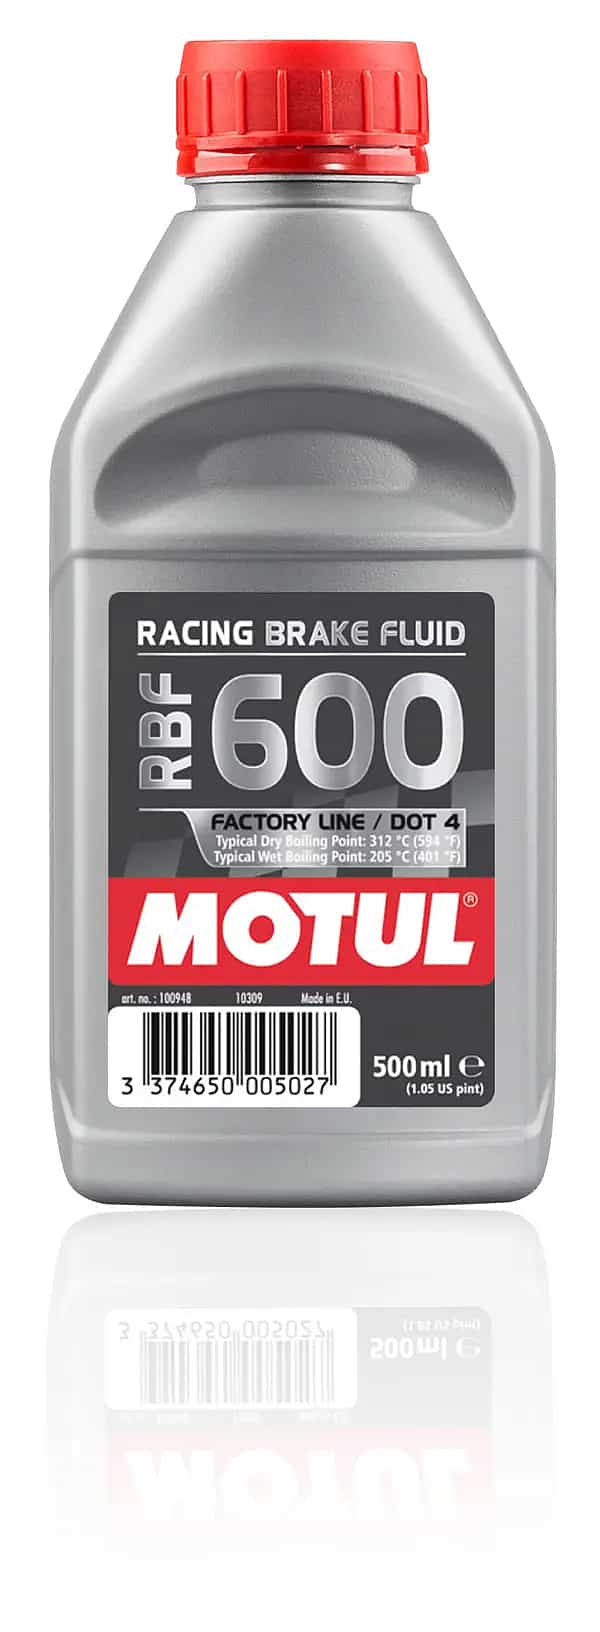 Motul Motorsport Bremsflüssigkeit RBF 600 DOT 4